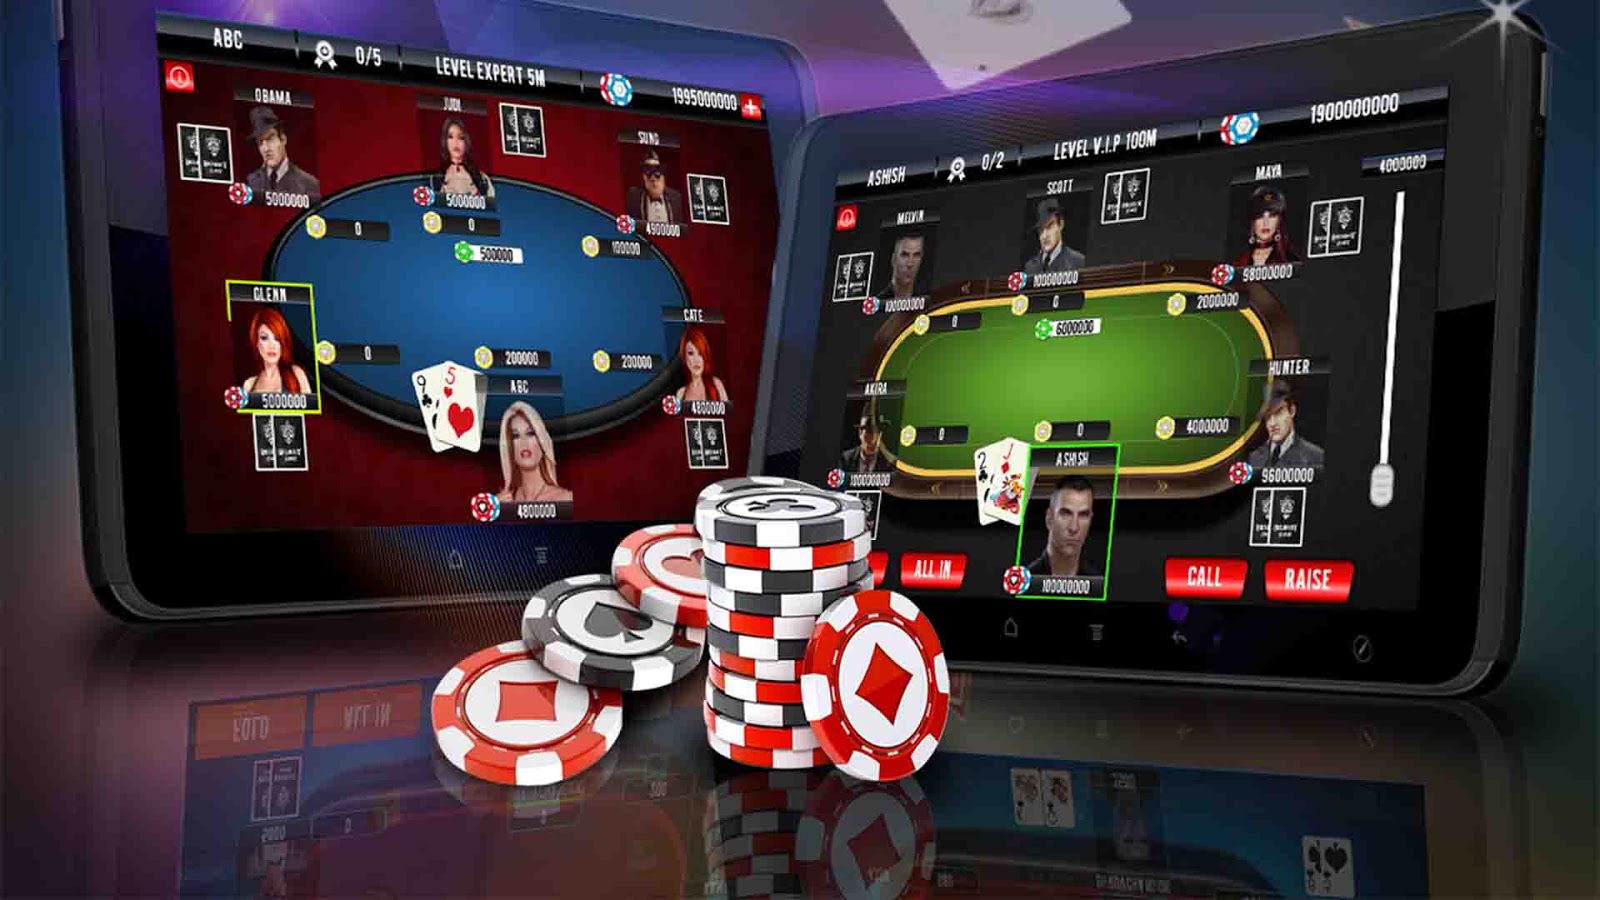 покер игра за реальные деньги